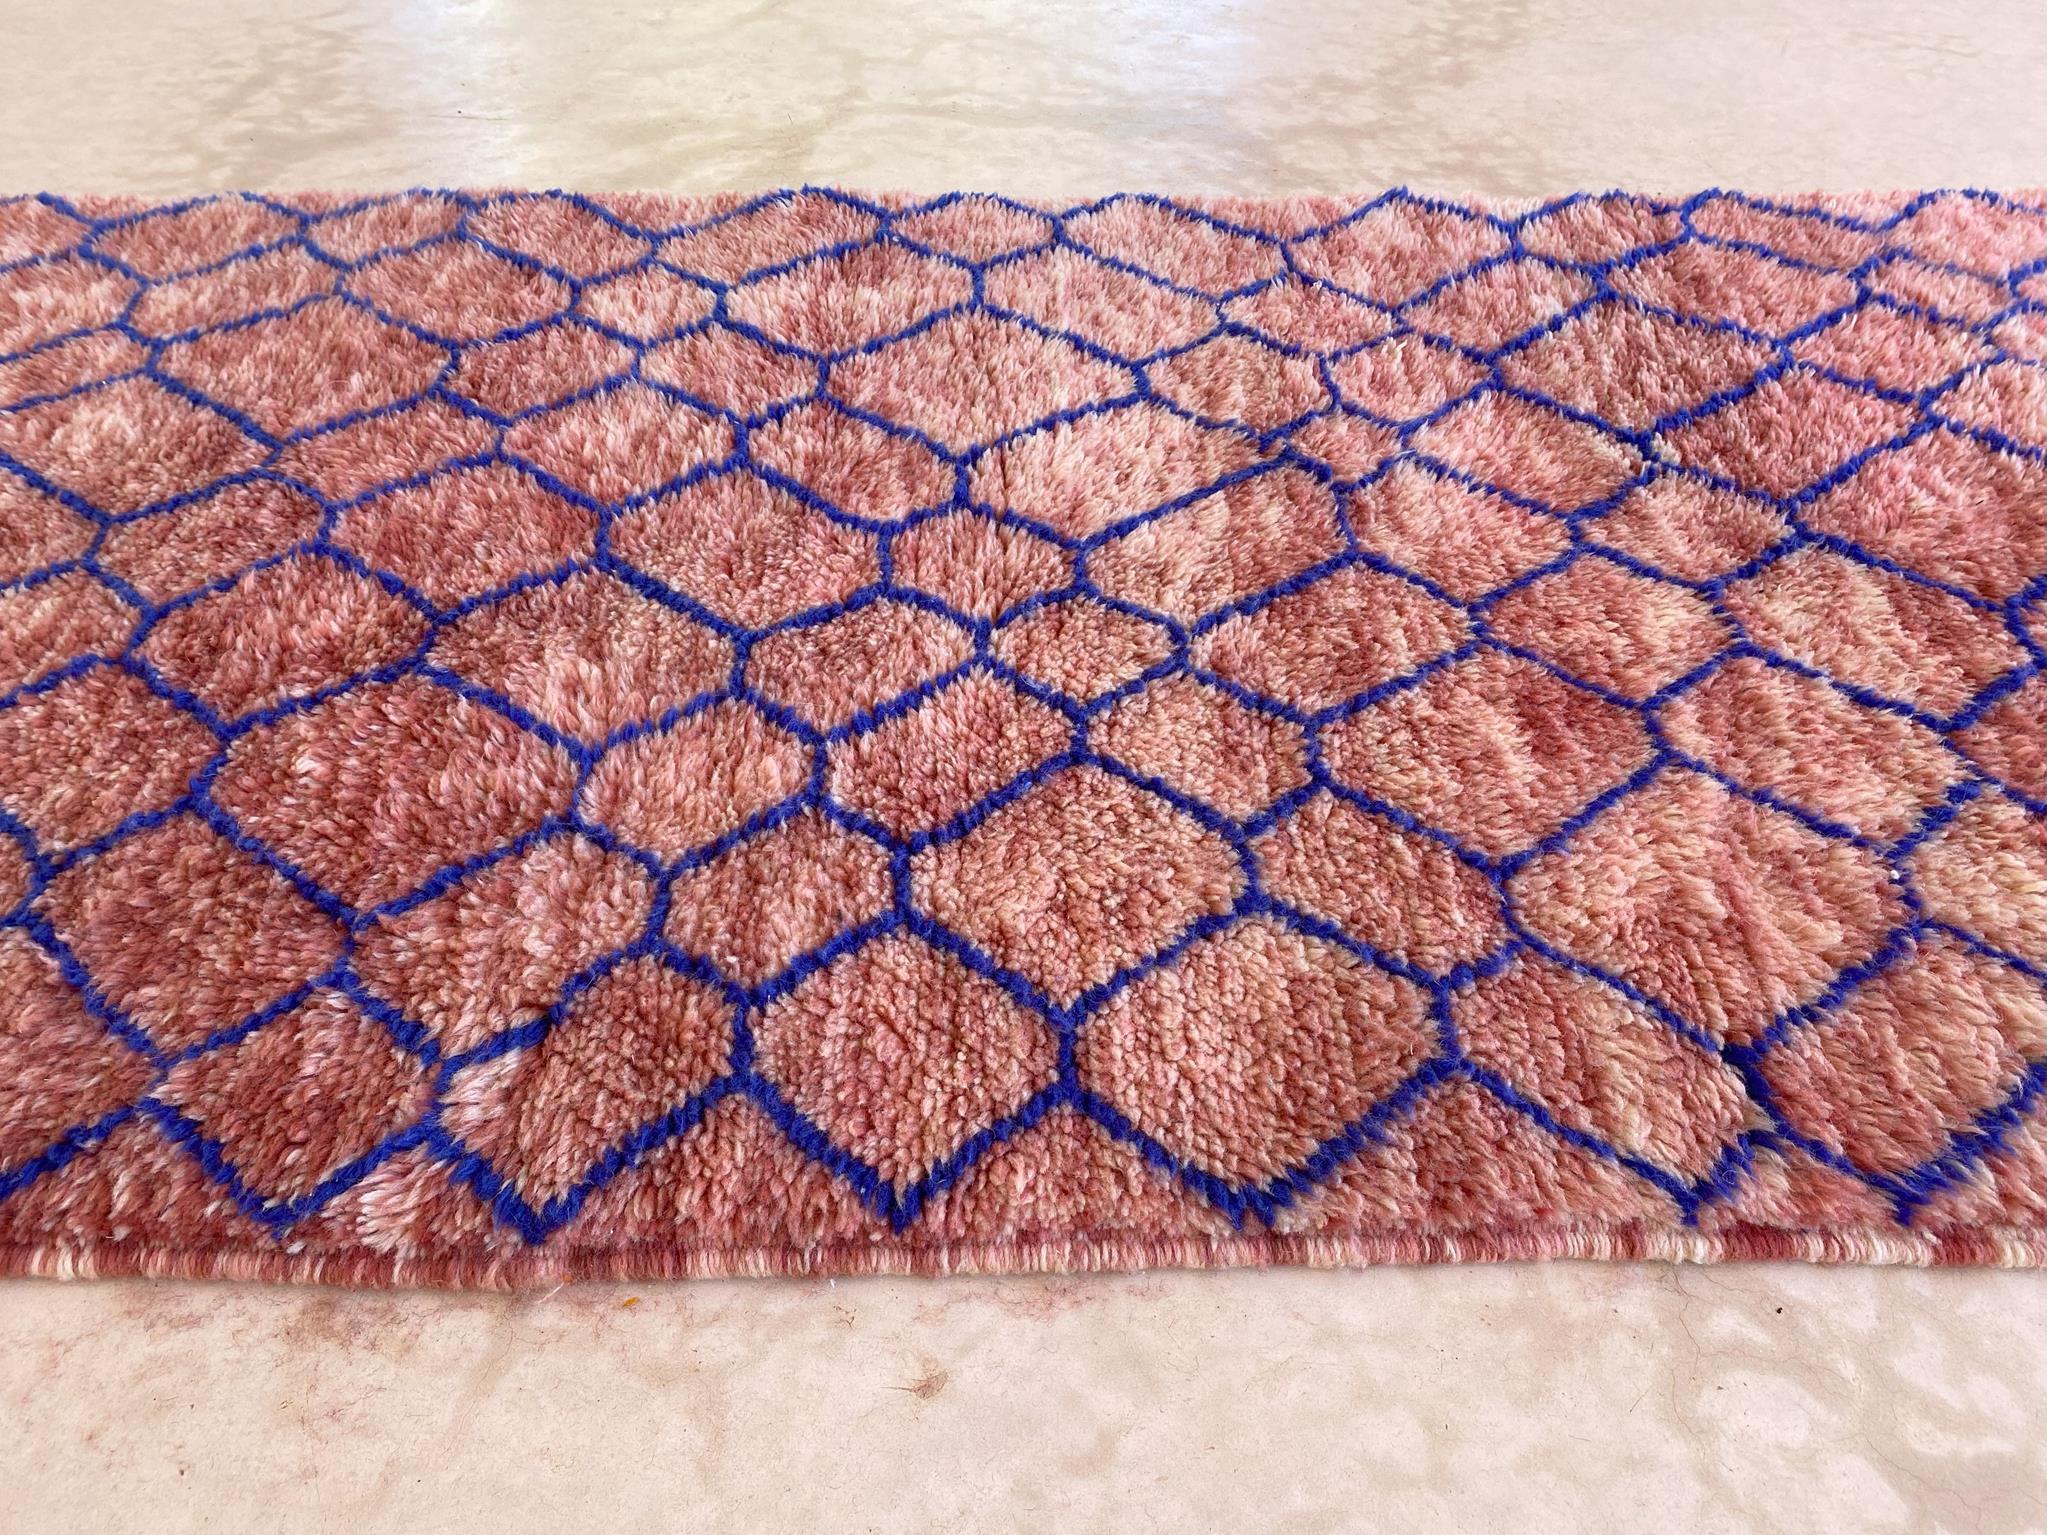 Modern Moroccan wool Mrirt runner rug - Pink/blue - 3.1x13.4feet / 95x408cm For Sale 1